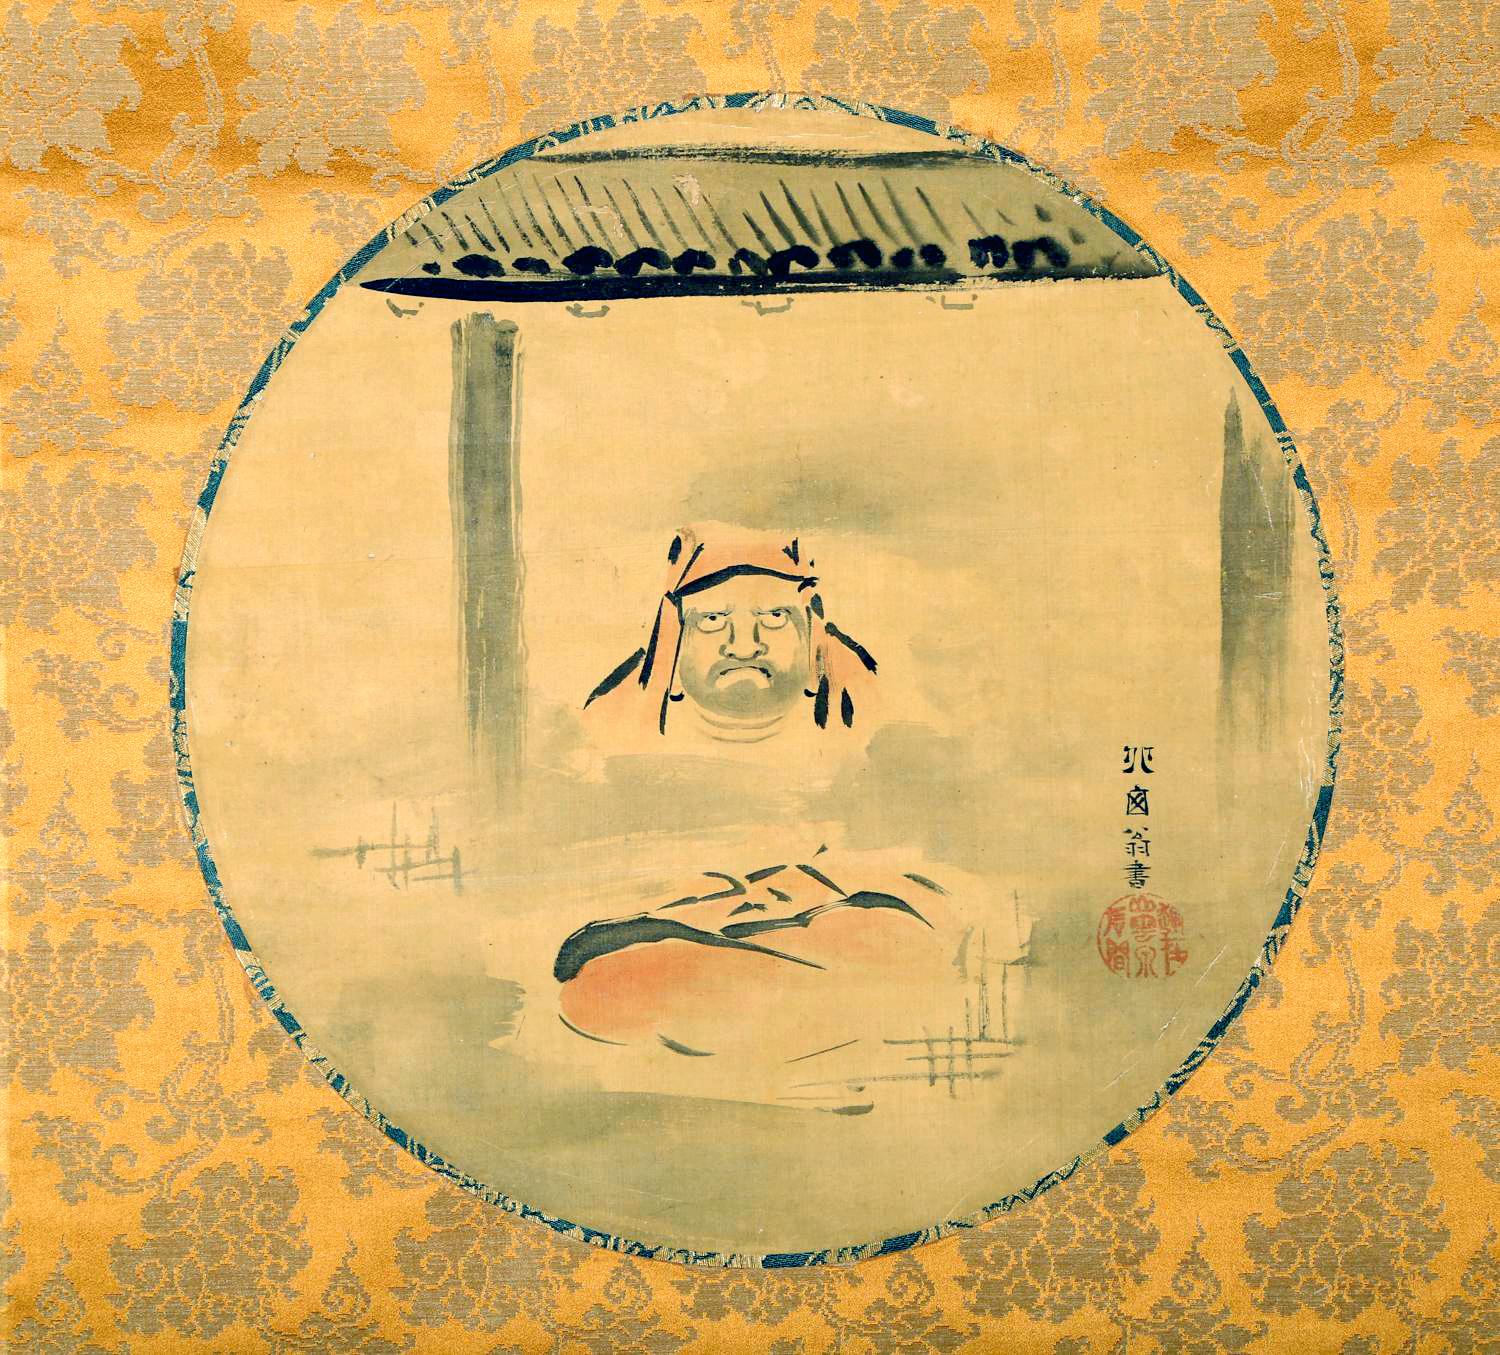 Rouleau suspendu japonais attribué au peintre de la période Edo Hanabusa Itchō (1652-1724). L'œuvre d'art présente une rondelle de soie joliment montée sur un fond de brocart doré. La peinture représente un Daruma vêtu, assis en méditation, les yeux